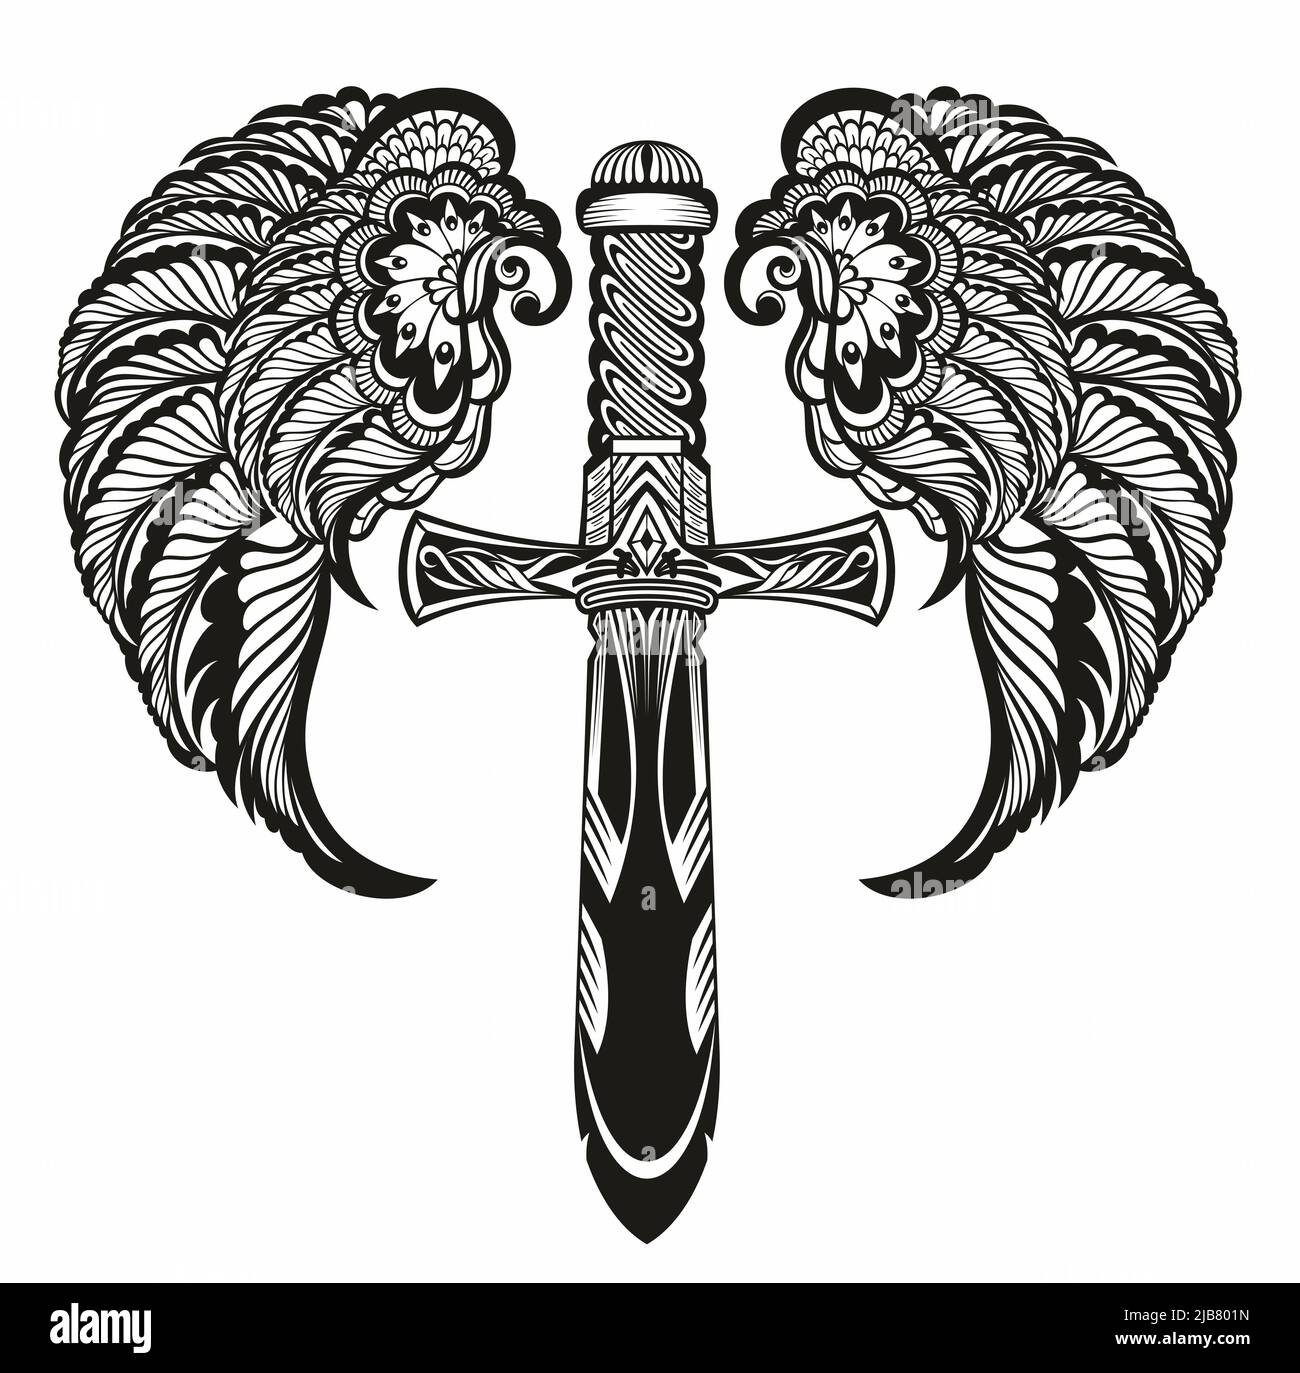 Logo d'épée à ailes blanches et noires avec ailes et plumes exétalantes élégantes pour un motif tatouage Banque D'Images